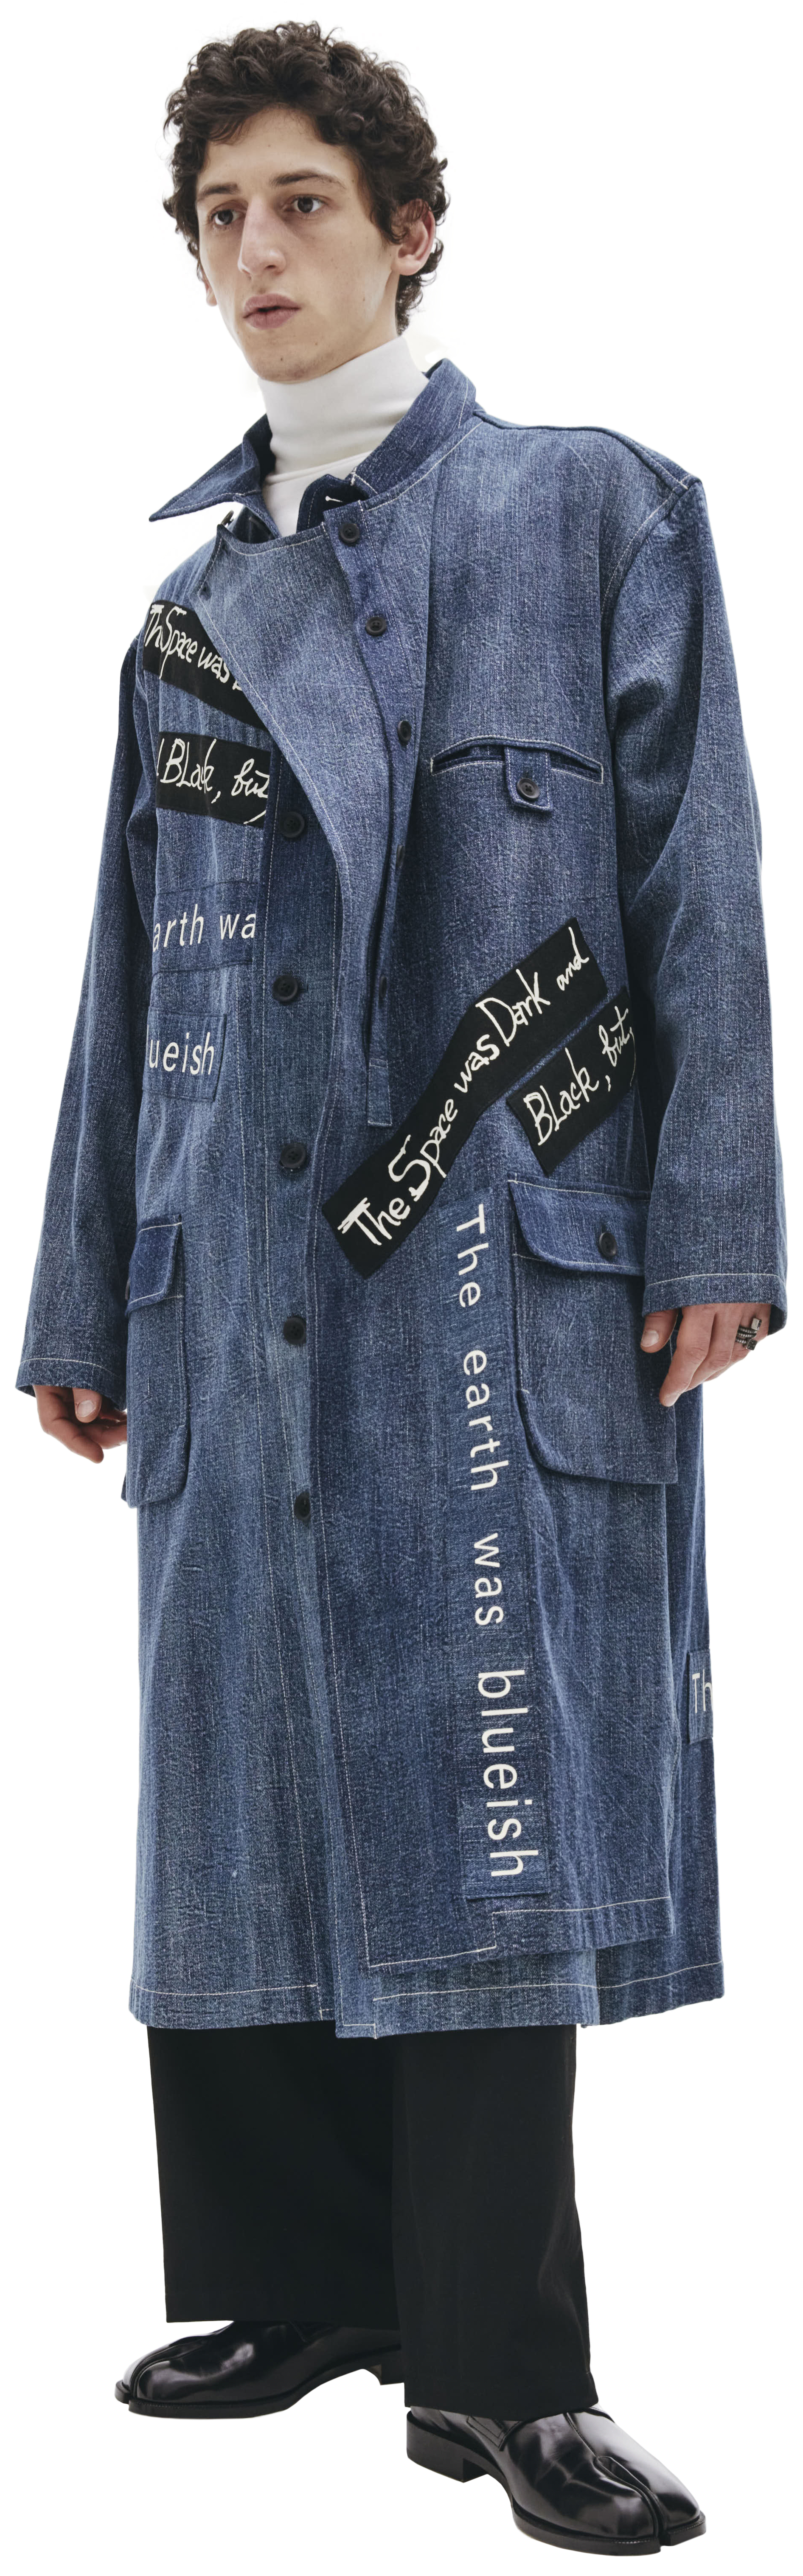 Buy Yohji Yamamoto men blue denim coat for $5,142 online on SV77